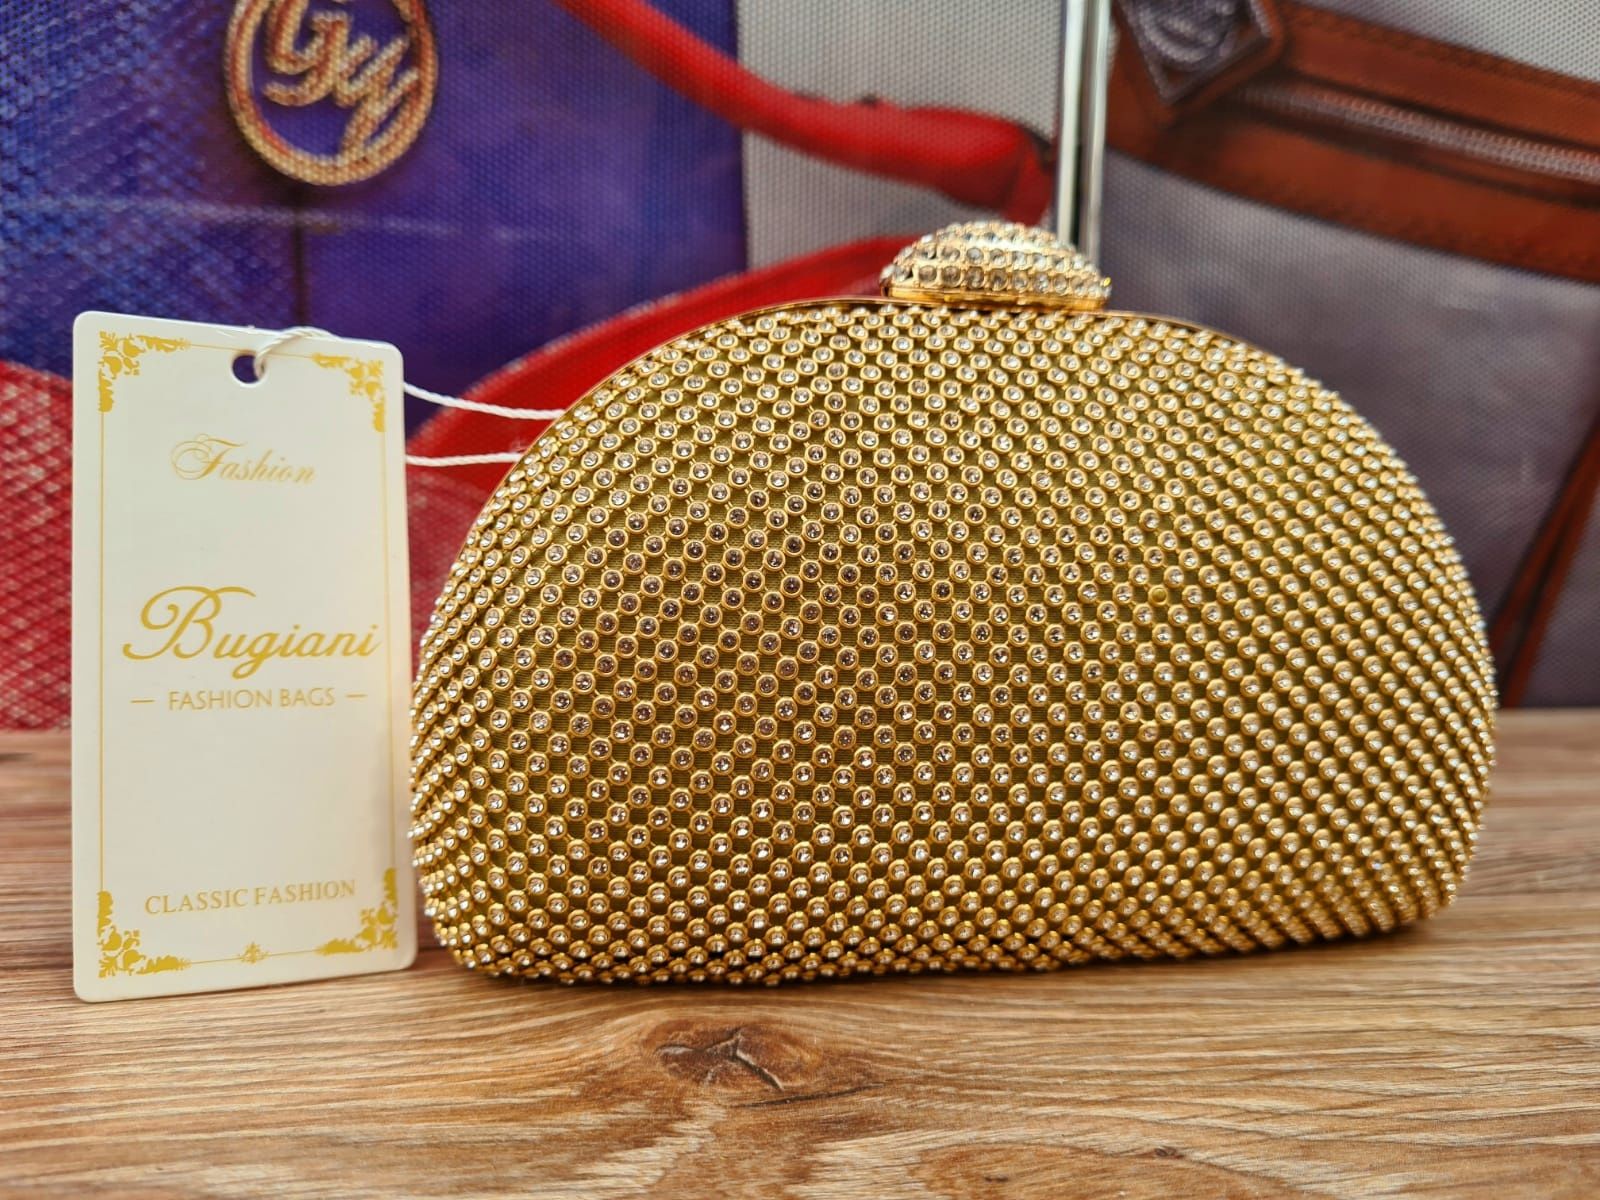 Nowa złota piękna torebka Kopertówka z cyrkoniami Bugiani